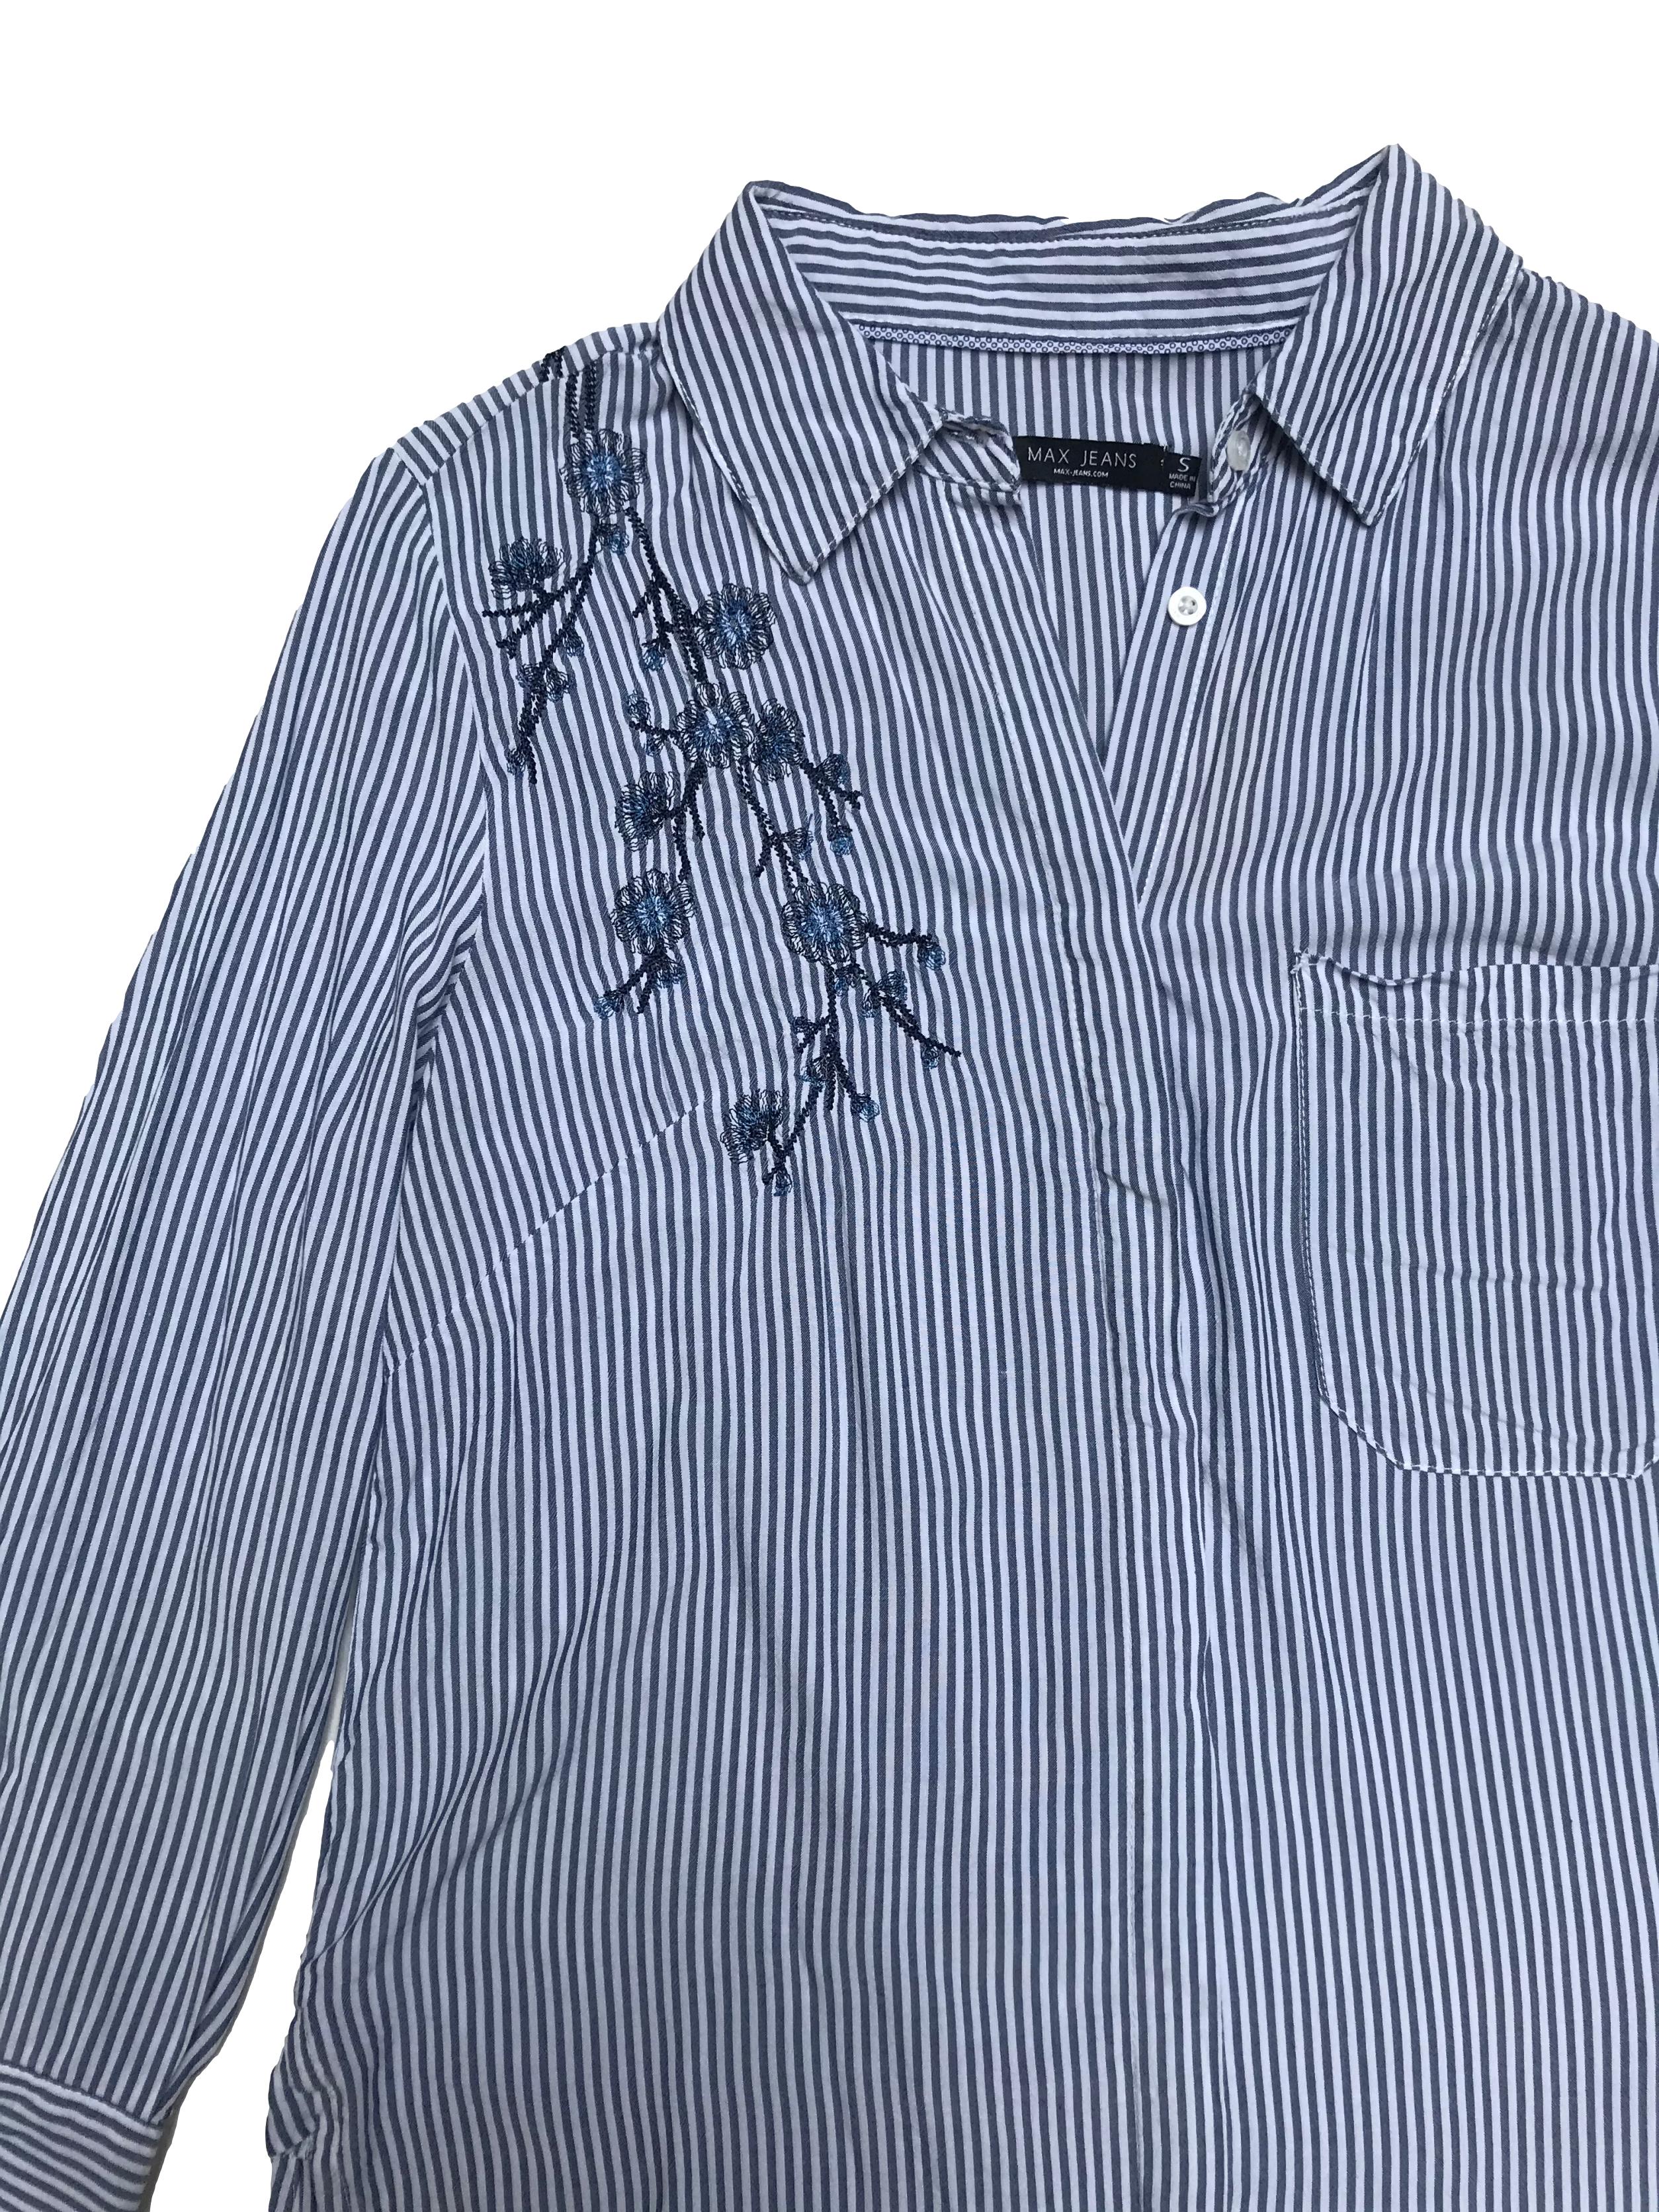 Blusa Max Jeansa rayas blancas y azules, camisera con bordados, bolsillos delantero, mangas 3/4 y aberturas laterales en la basta.